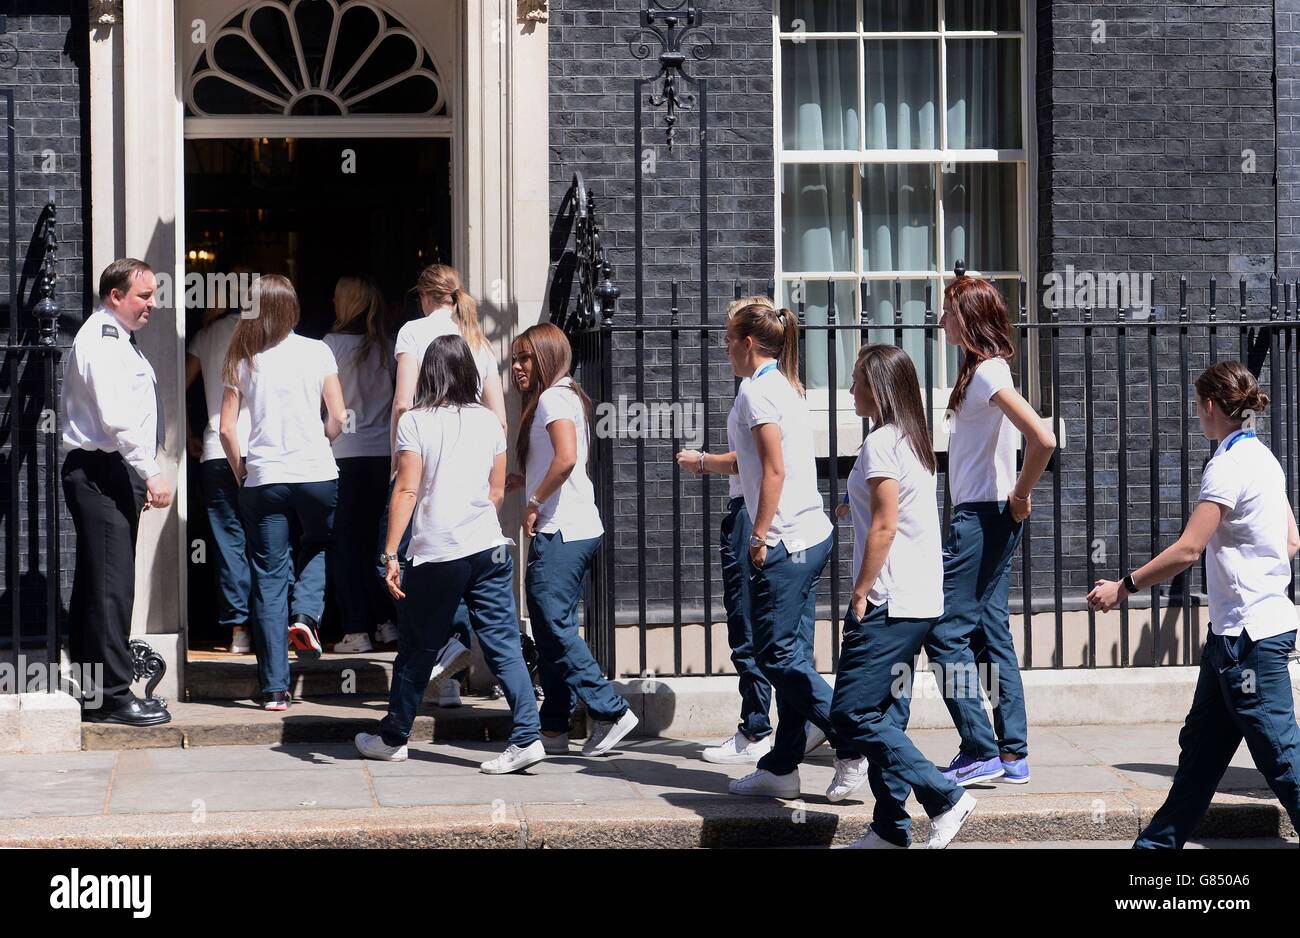 Les membres de l'équipe de football féminine d'Angleterre arrivent pour une réception au 10 Downing Street, Londres. Banque D'Images